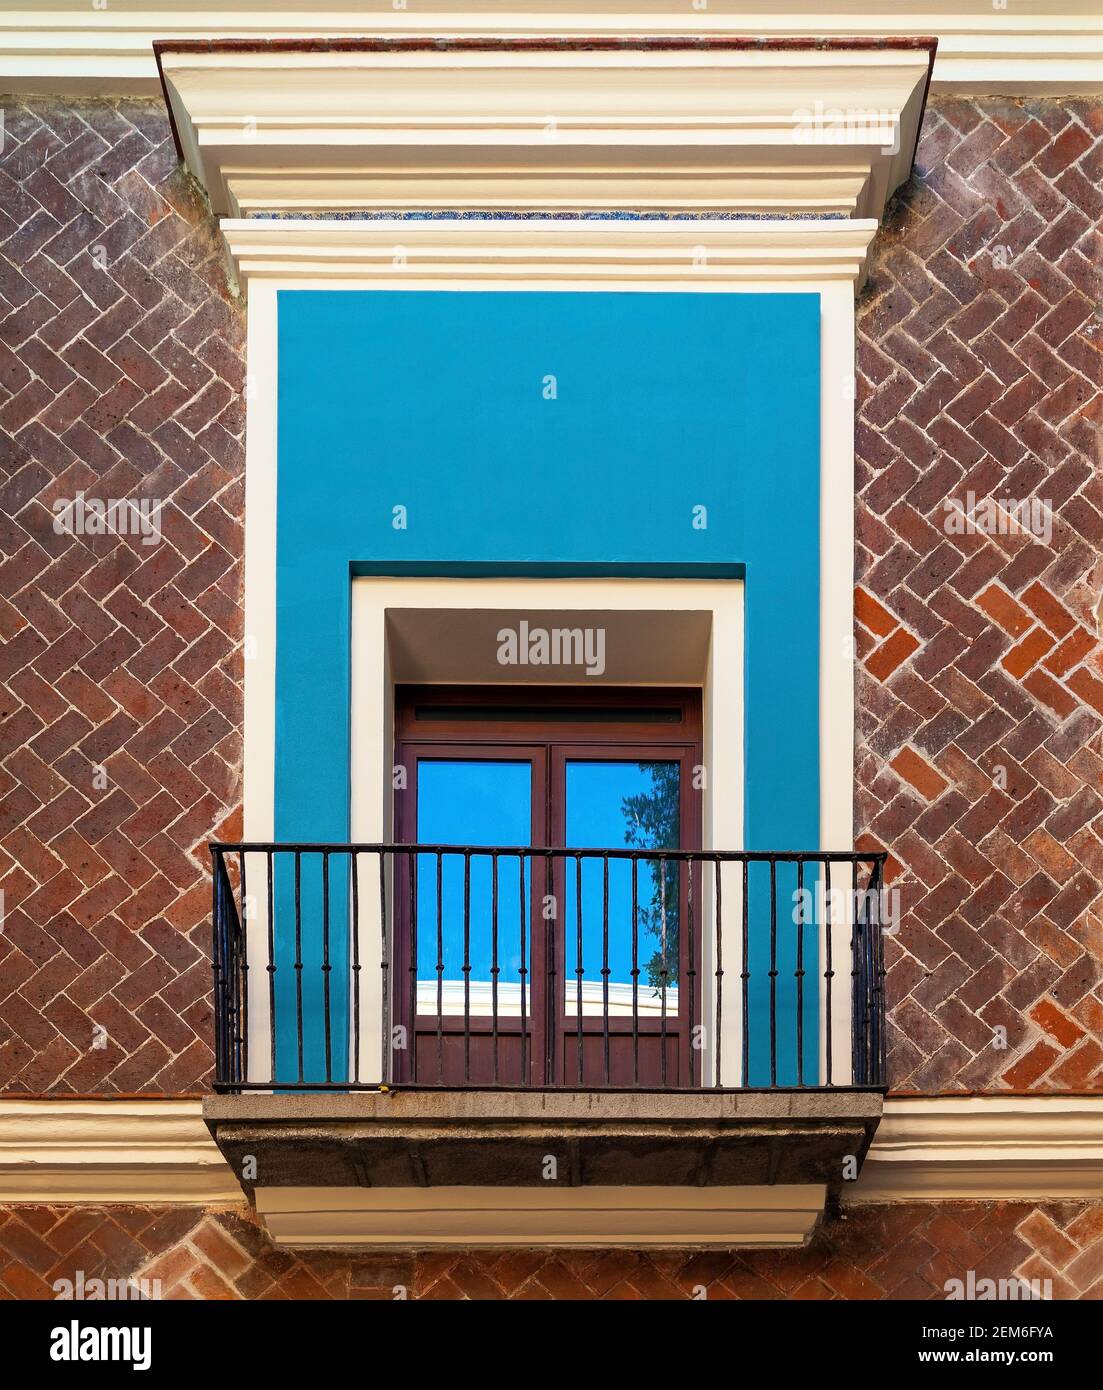 Balcony window with brick facade, Puebla, Mexico. Stock Photo